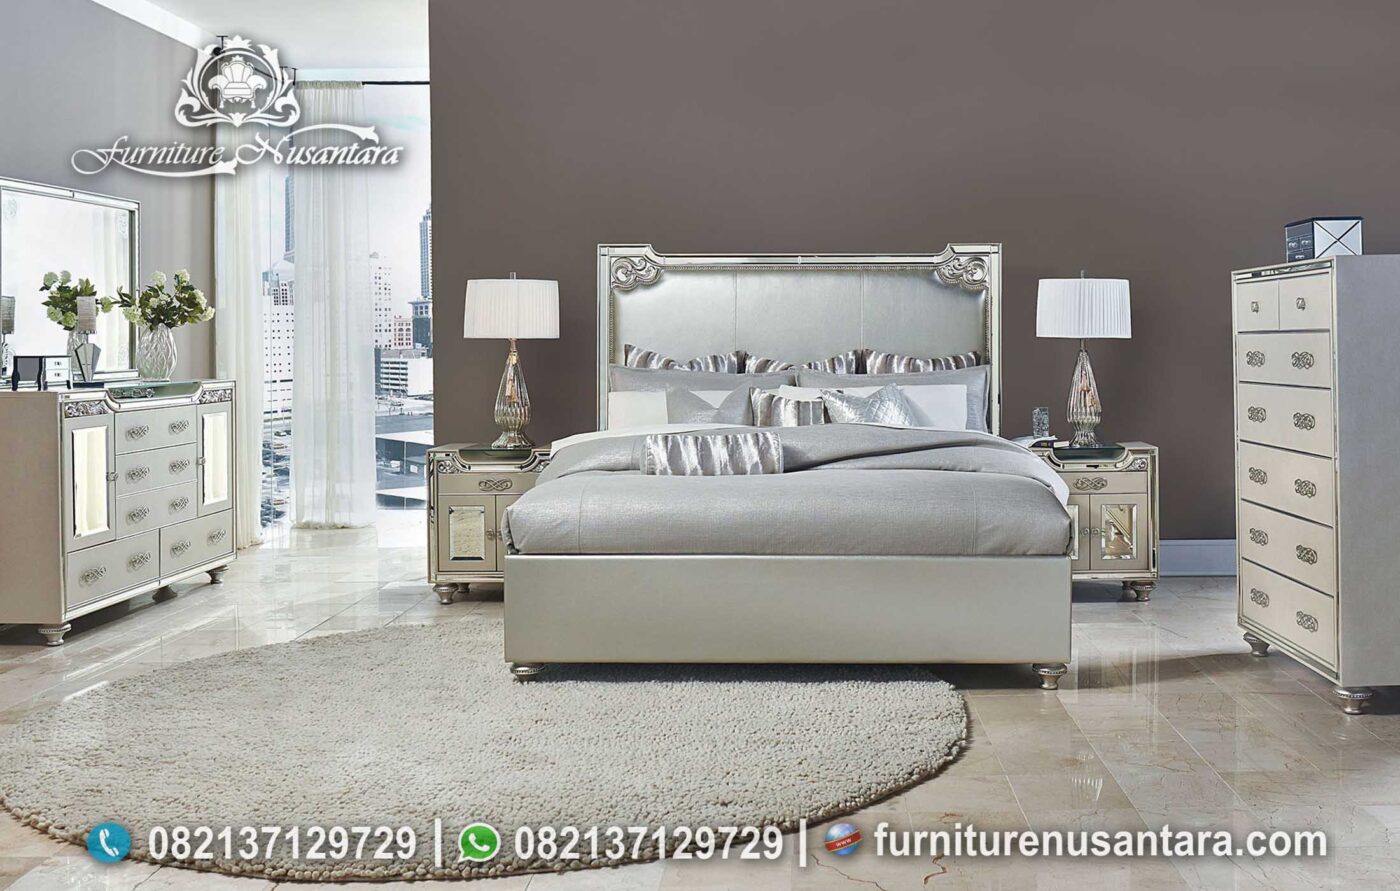 Desain Kamar Tidur Minimalis Mewah KS-217, Furniture Nusantara